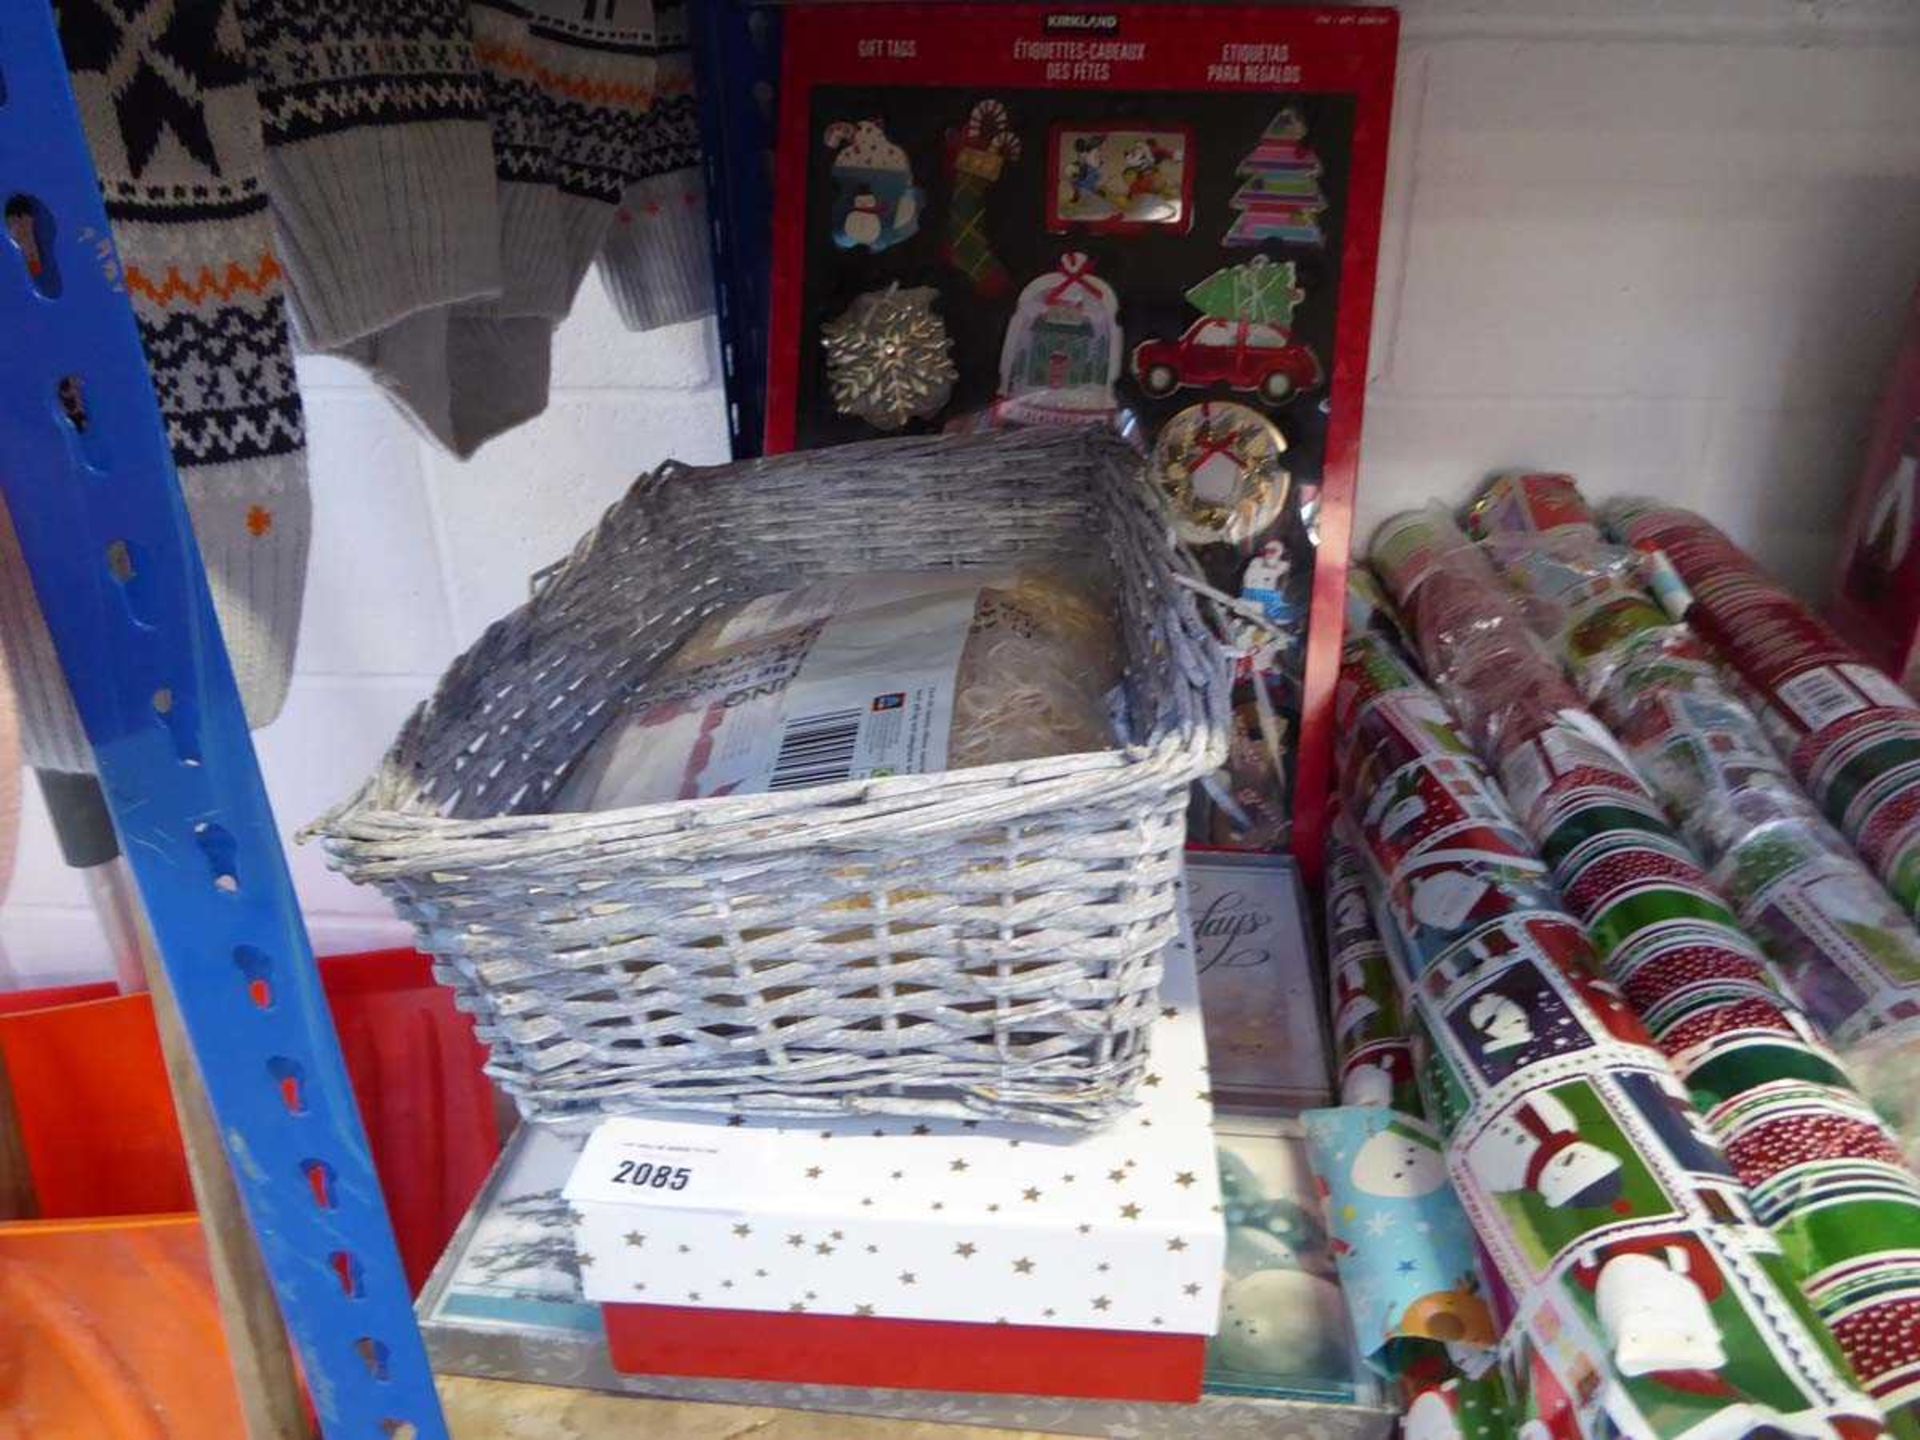 +VAT 2 packs of Christmas cards, Kirkland gift tag set and a wicker hamper set up set